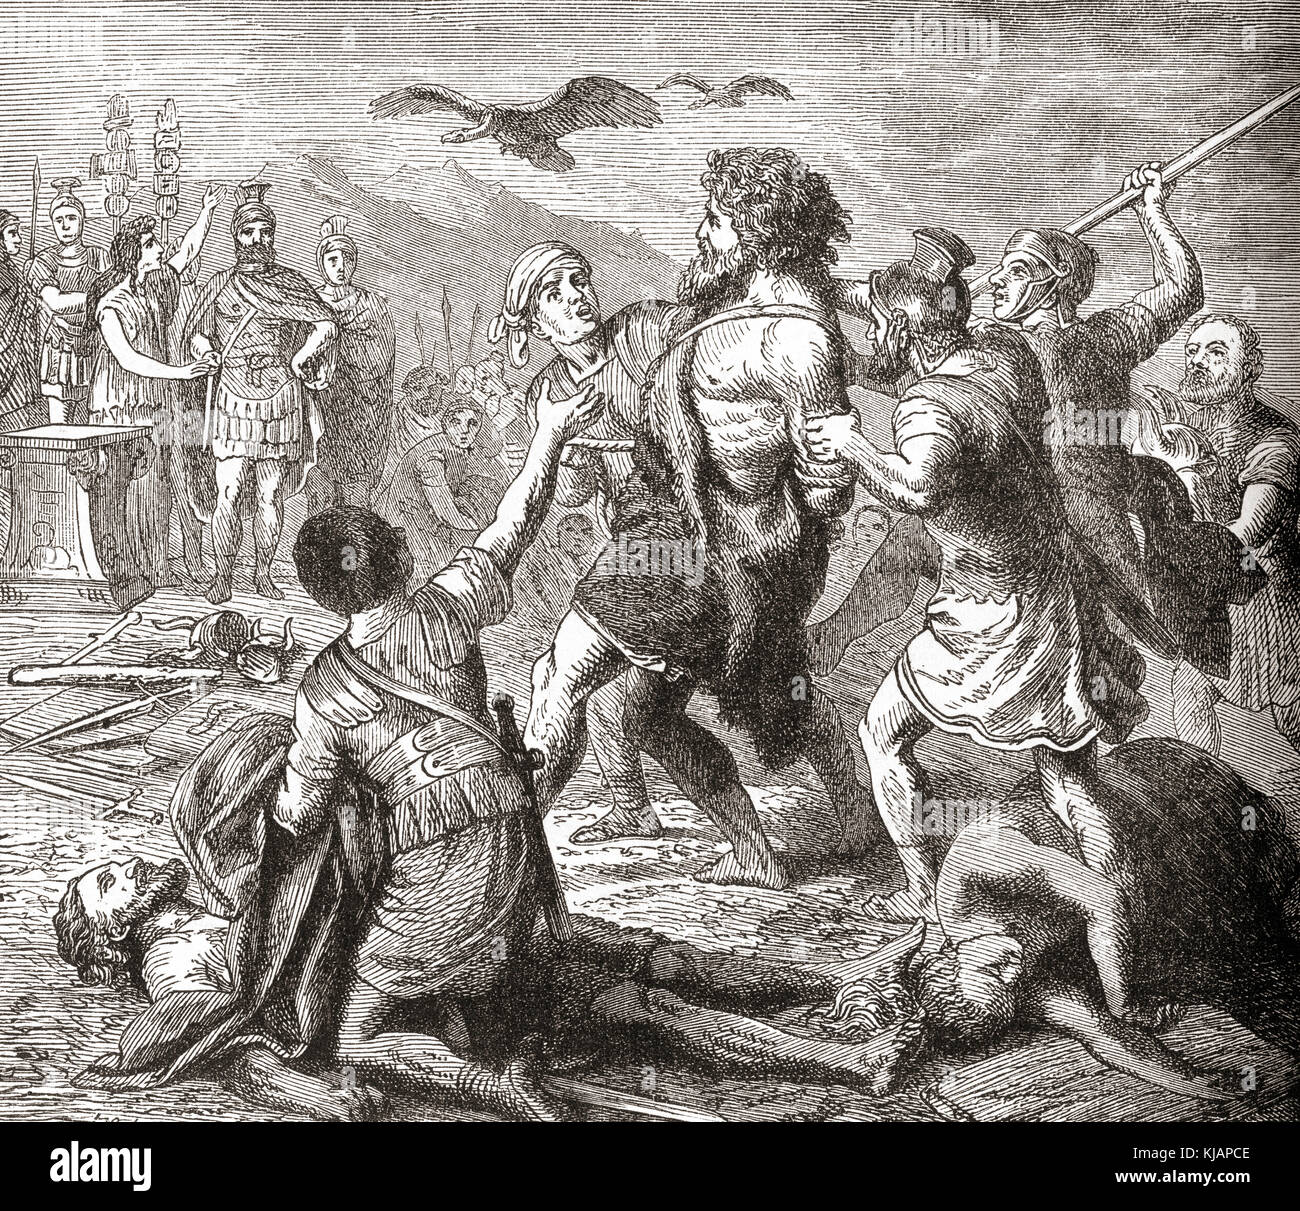 La capture de Teutobochus, géant légendaire et roi des Teutons. Extrait de l'Histoire illustrée du monde de Ward and Lock, publié vers 1882. Banque D'Images